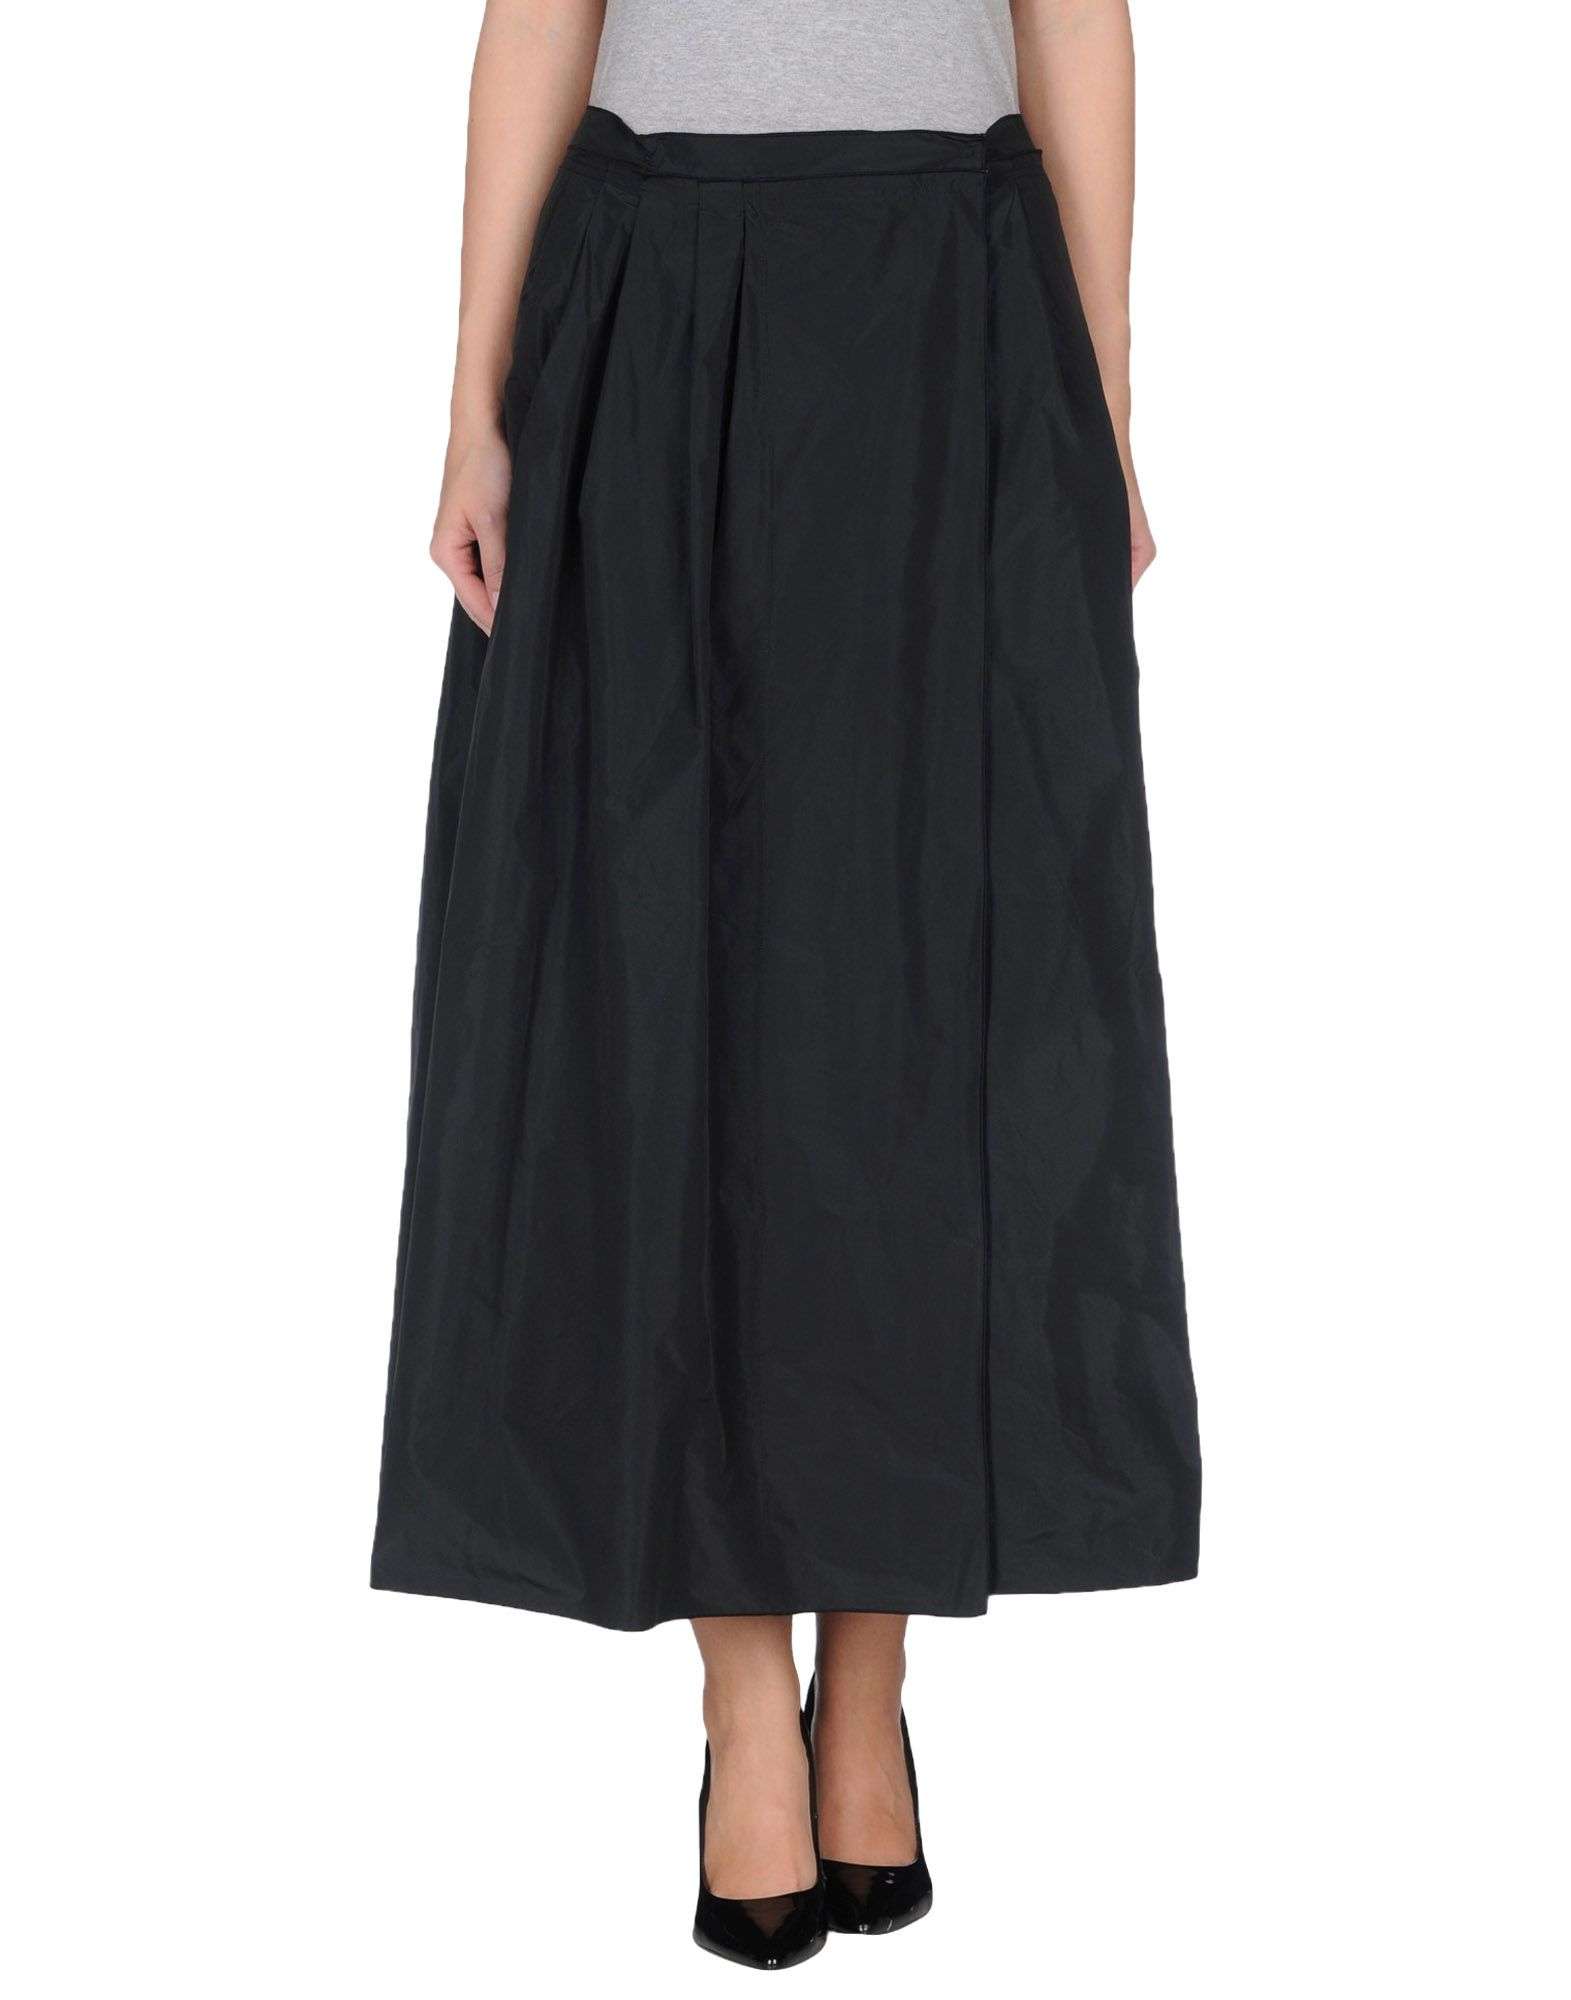 S maxmara Long Skirt in Black | Lyst